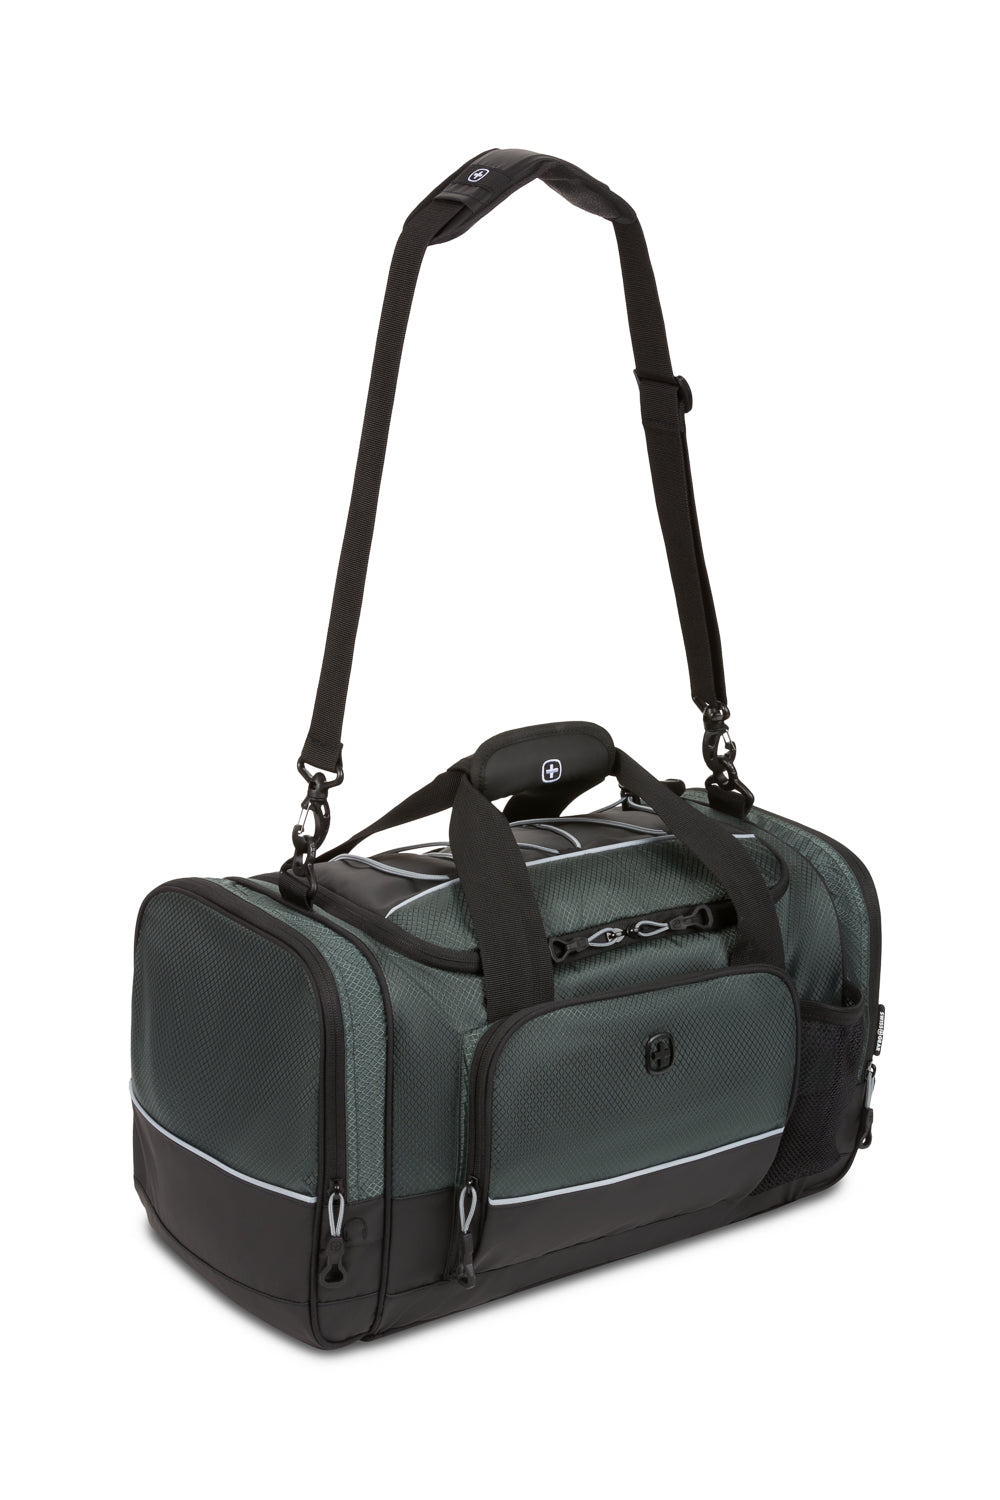 SwissGear 9000 20" Apex Duffel Bag